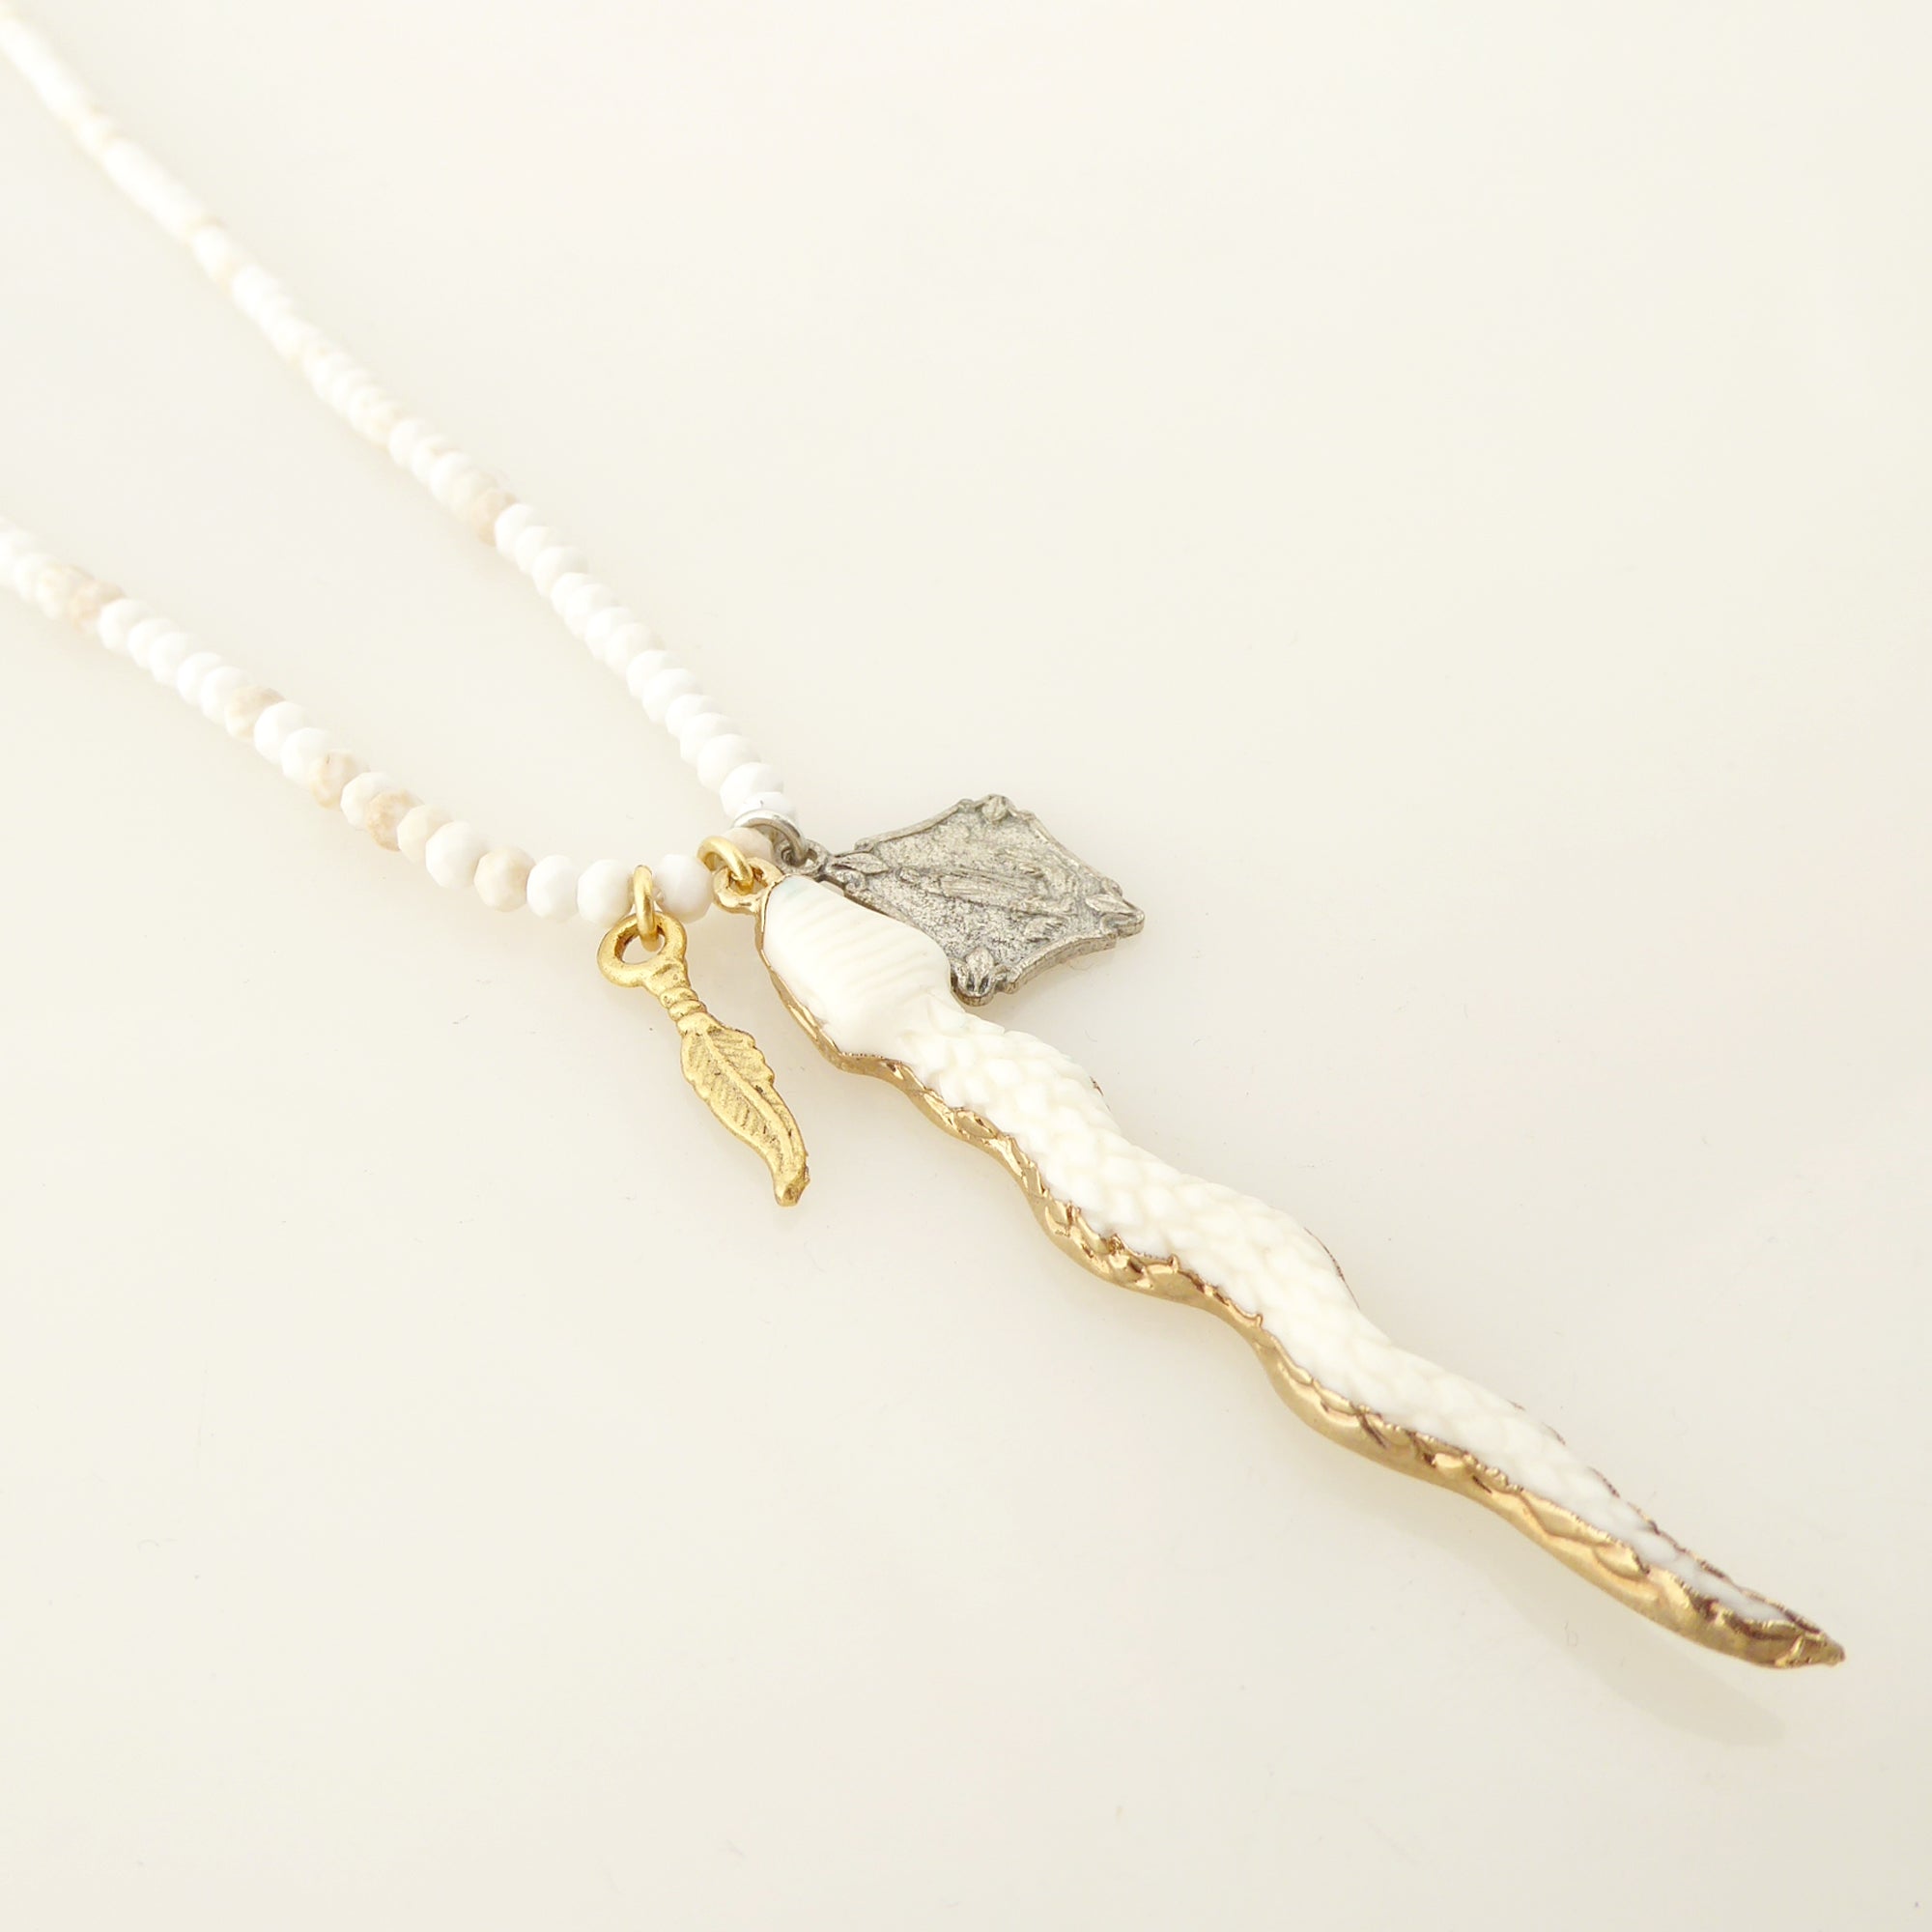 Carved snake pendant necklace by Jenny Dayco 2